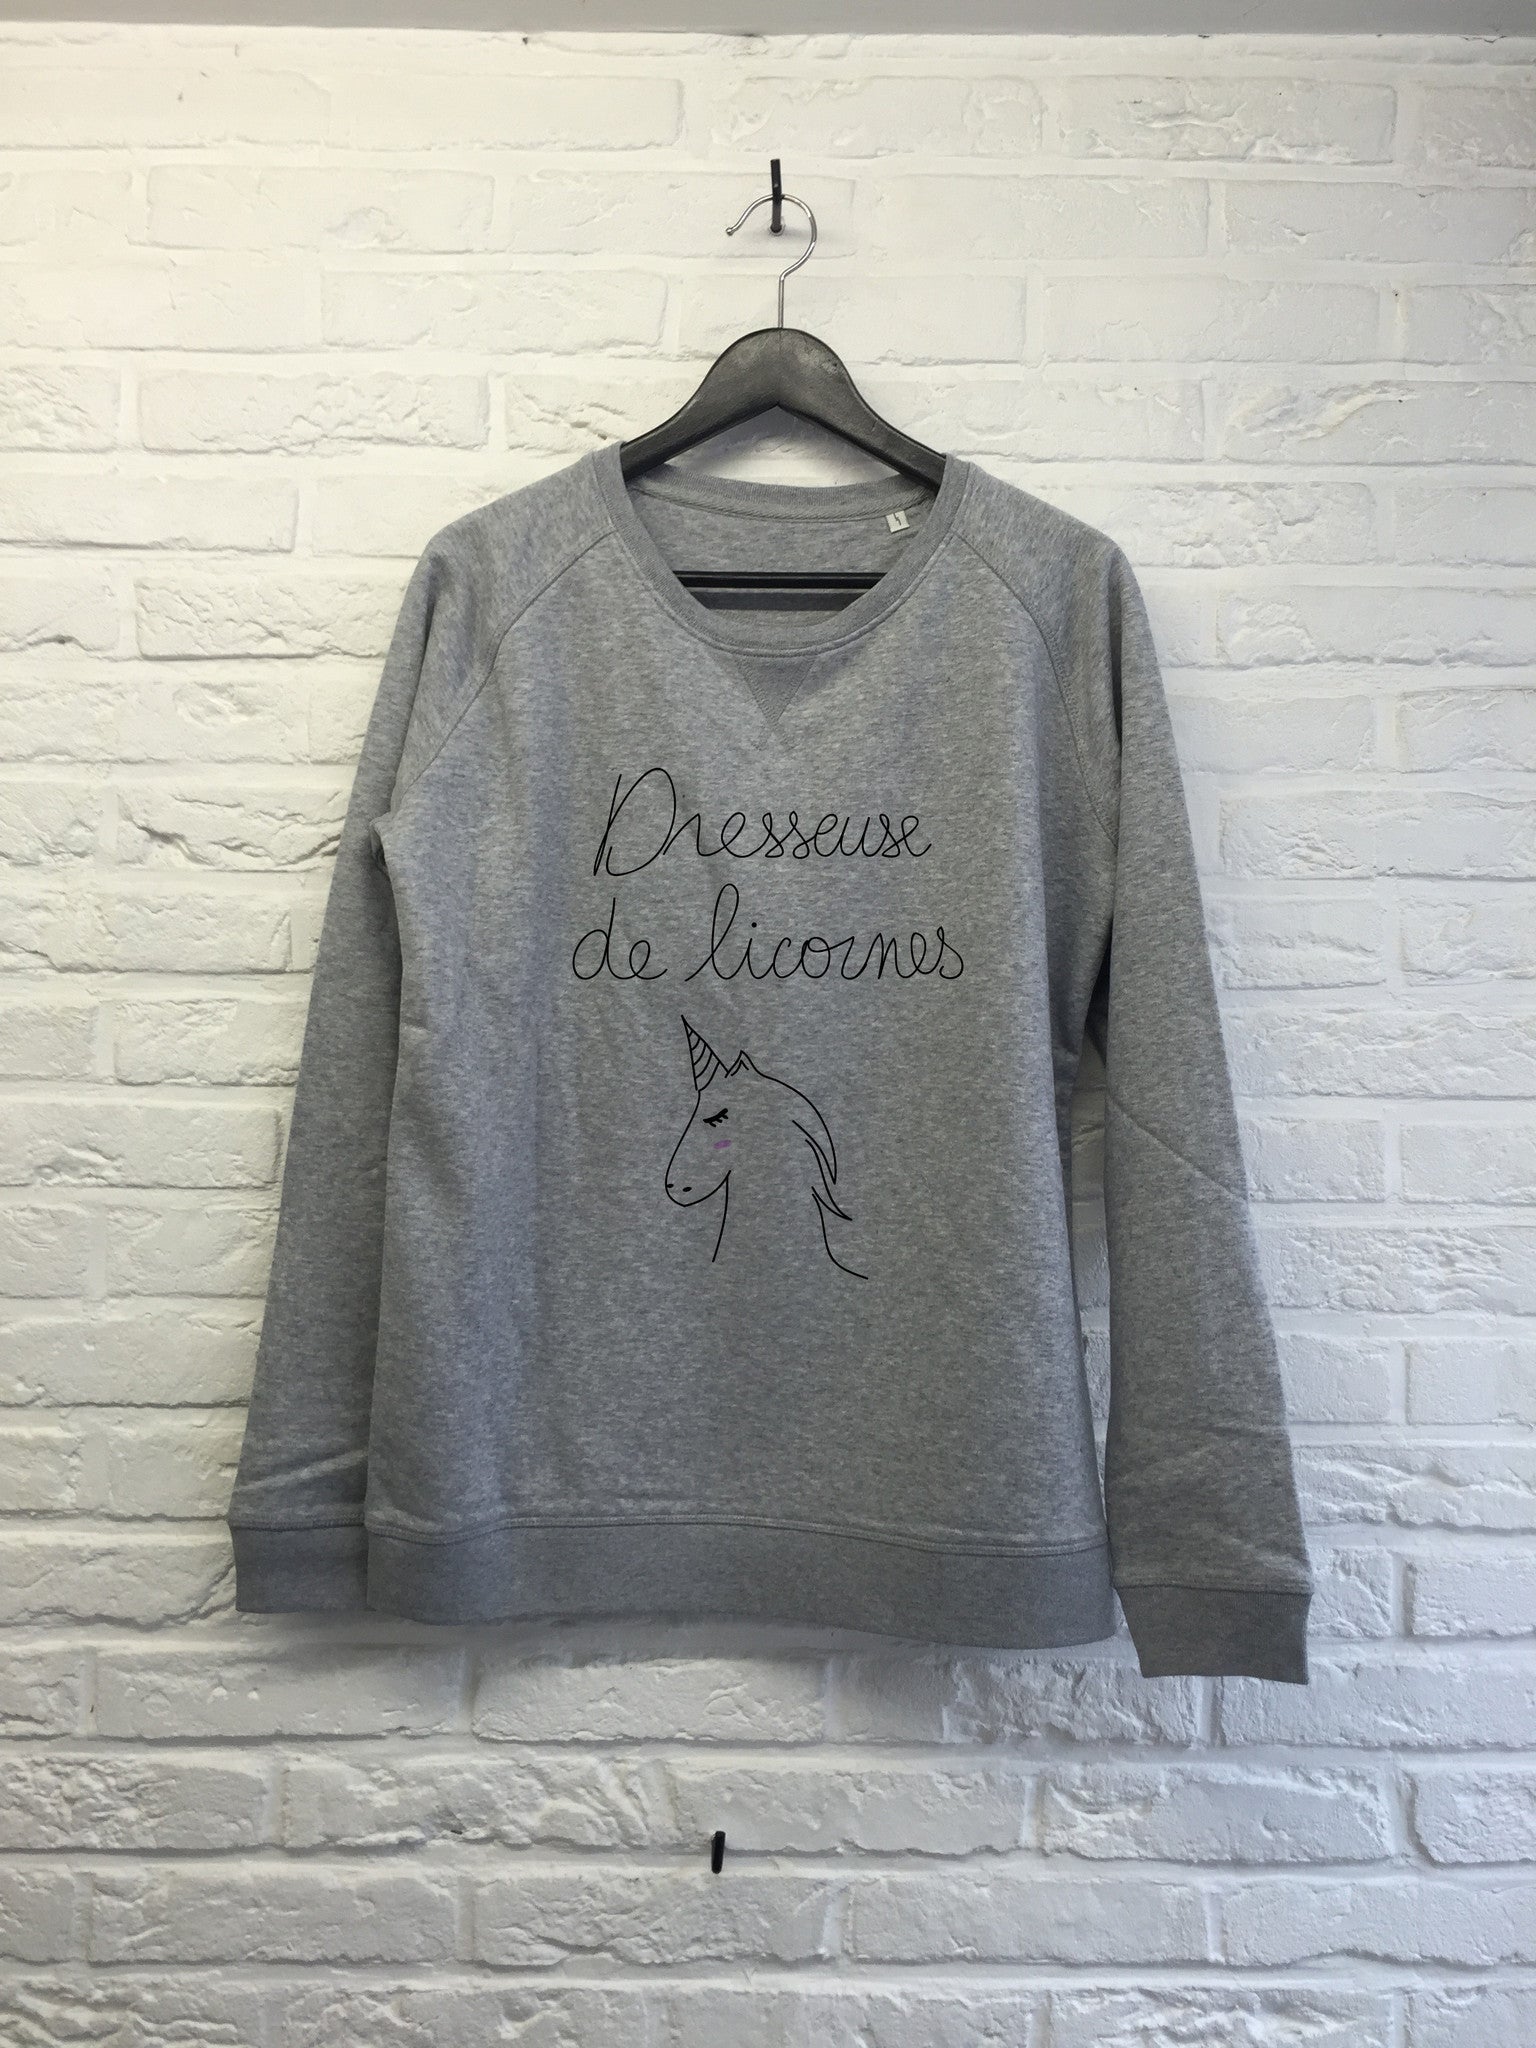 Dresseuse de Licornes - Sweat - Femme-Sweat shirts-Atelier Amelot